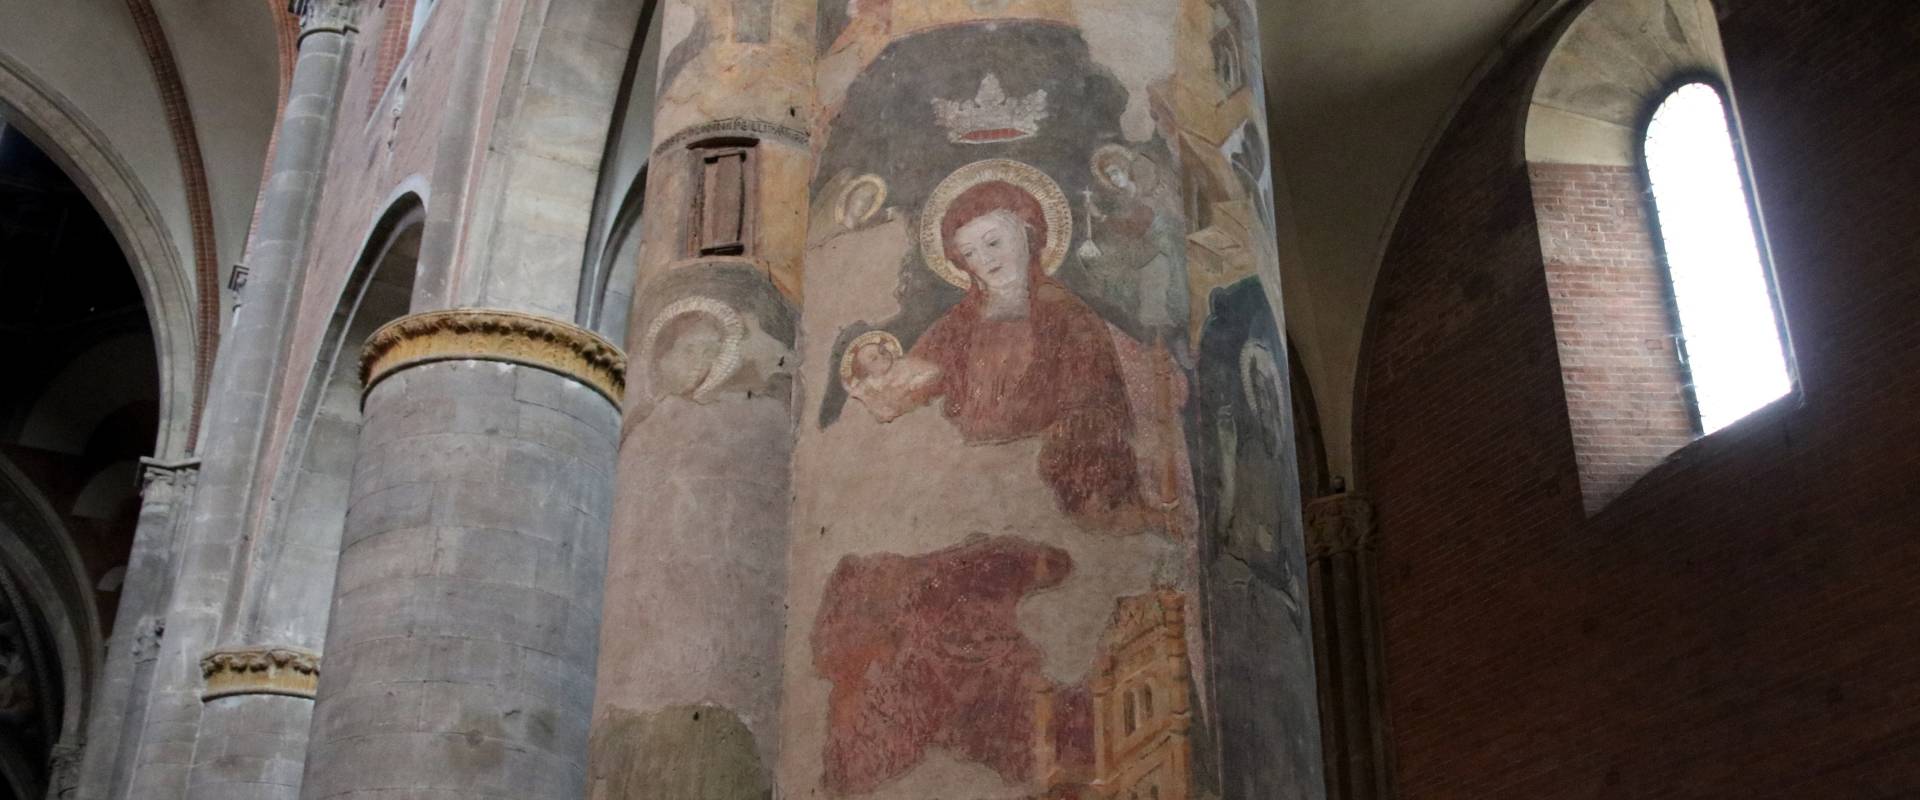 Duomo (Piacenza), Beata Vergine in trono con il Bambino 01 photo by Mongolo1984